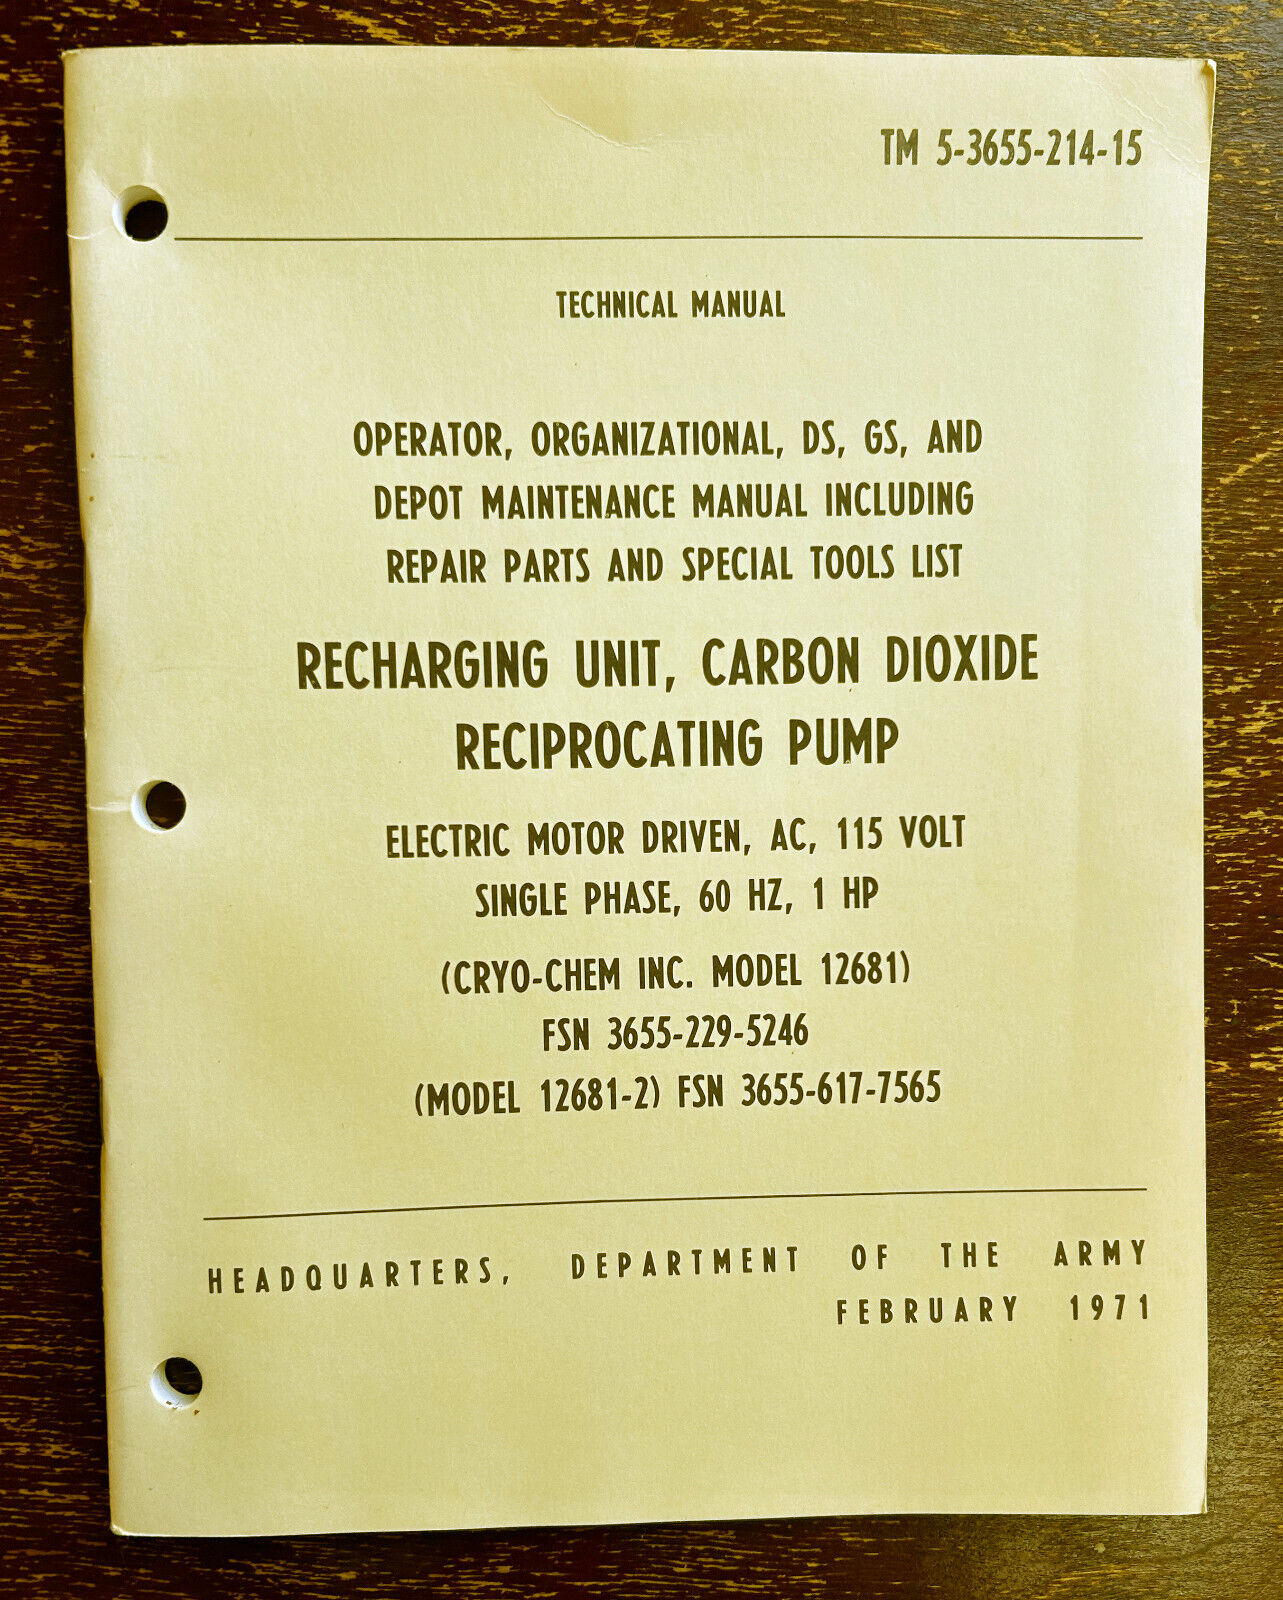 1971 RECHARGING UNIT, CARBON DIOXIDE RECIPROCATING PUMP, TM 5-3655-214-15, CRYO